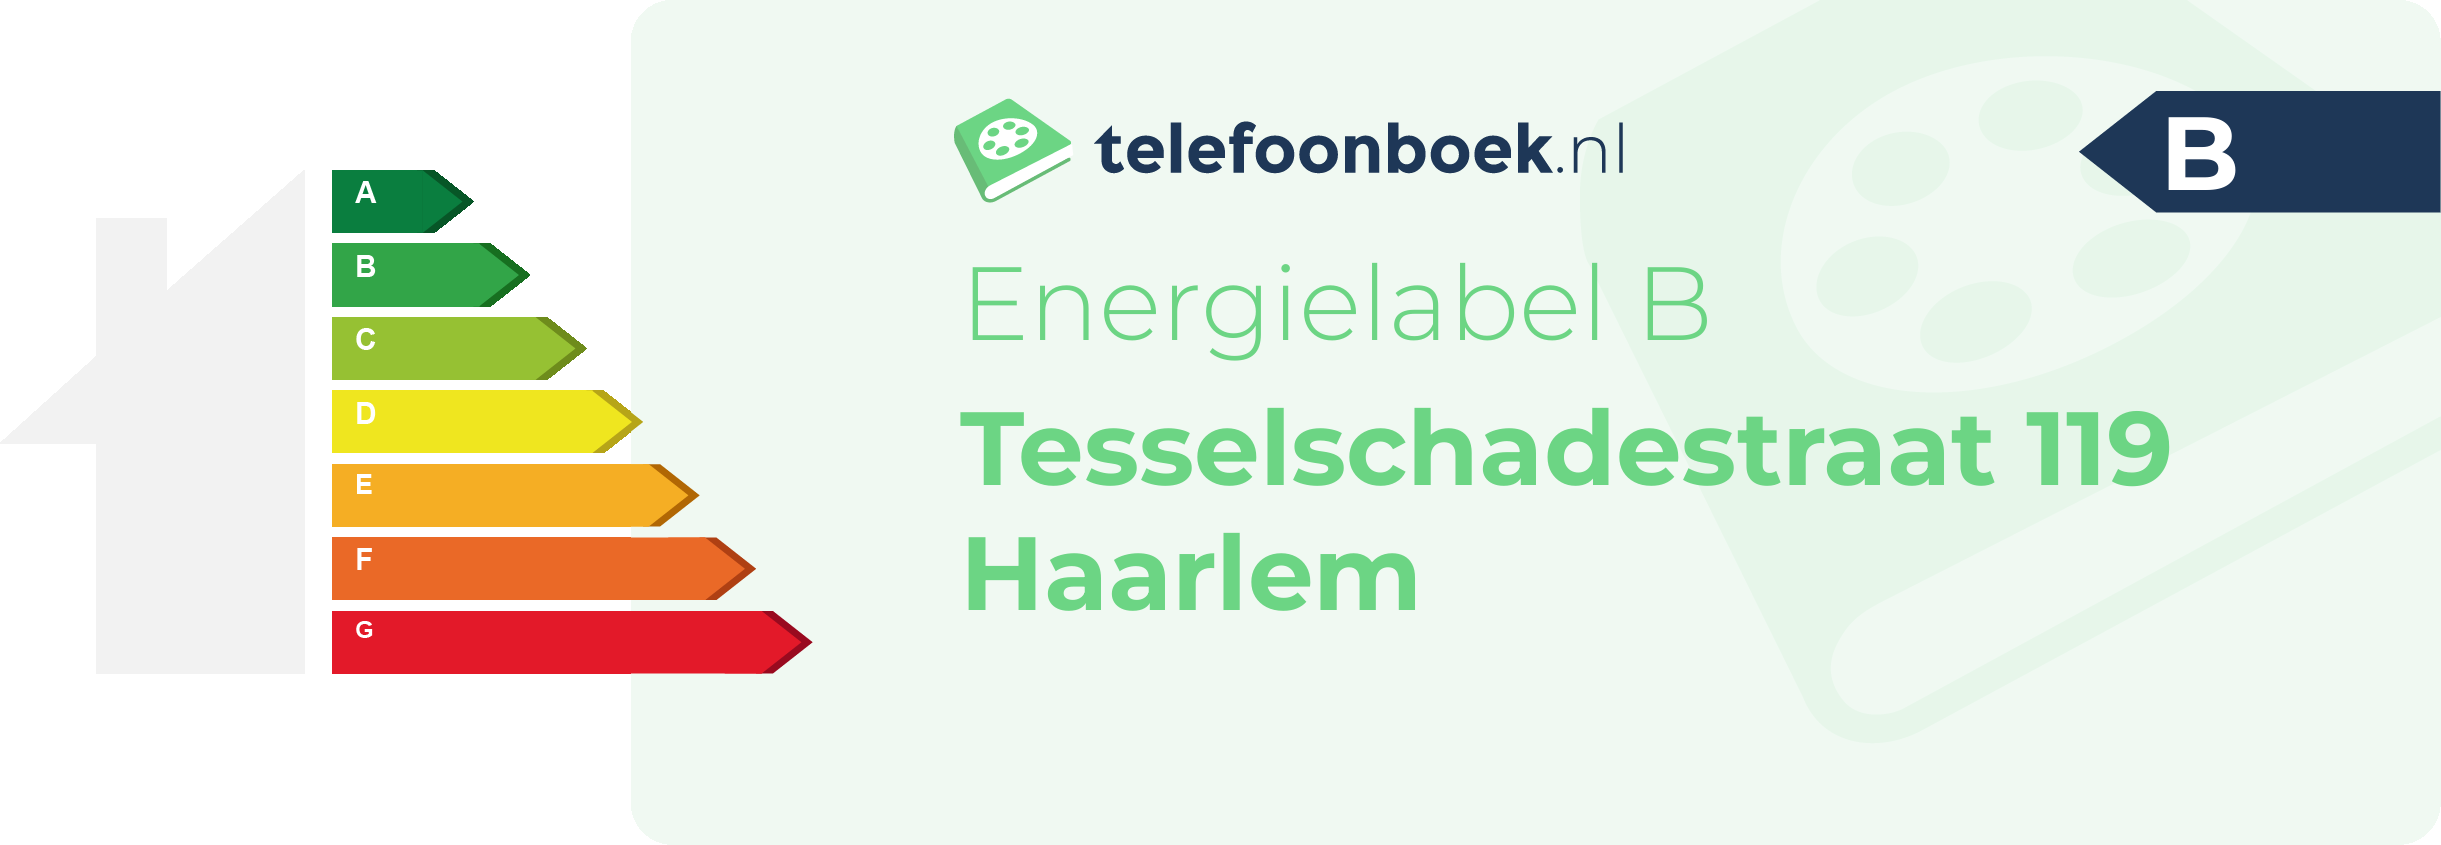 Energielabel Tesselschadestraat 119 Haarlem